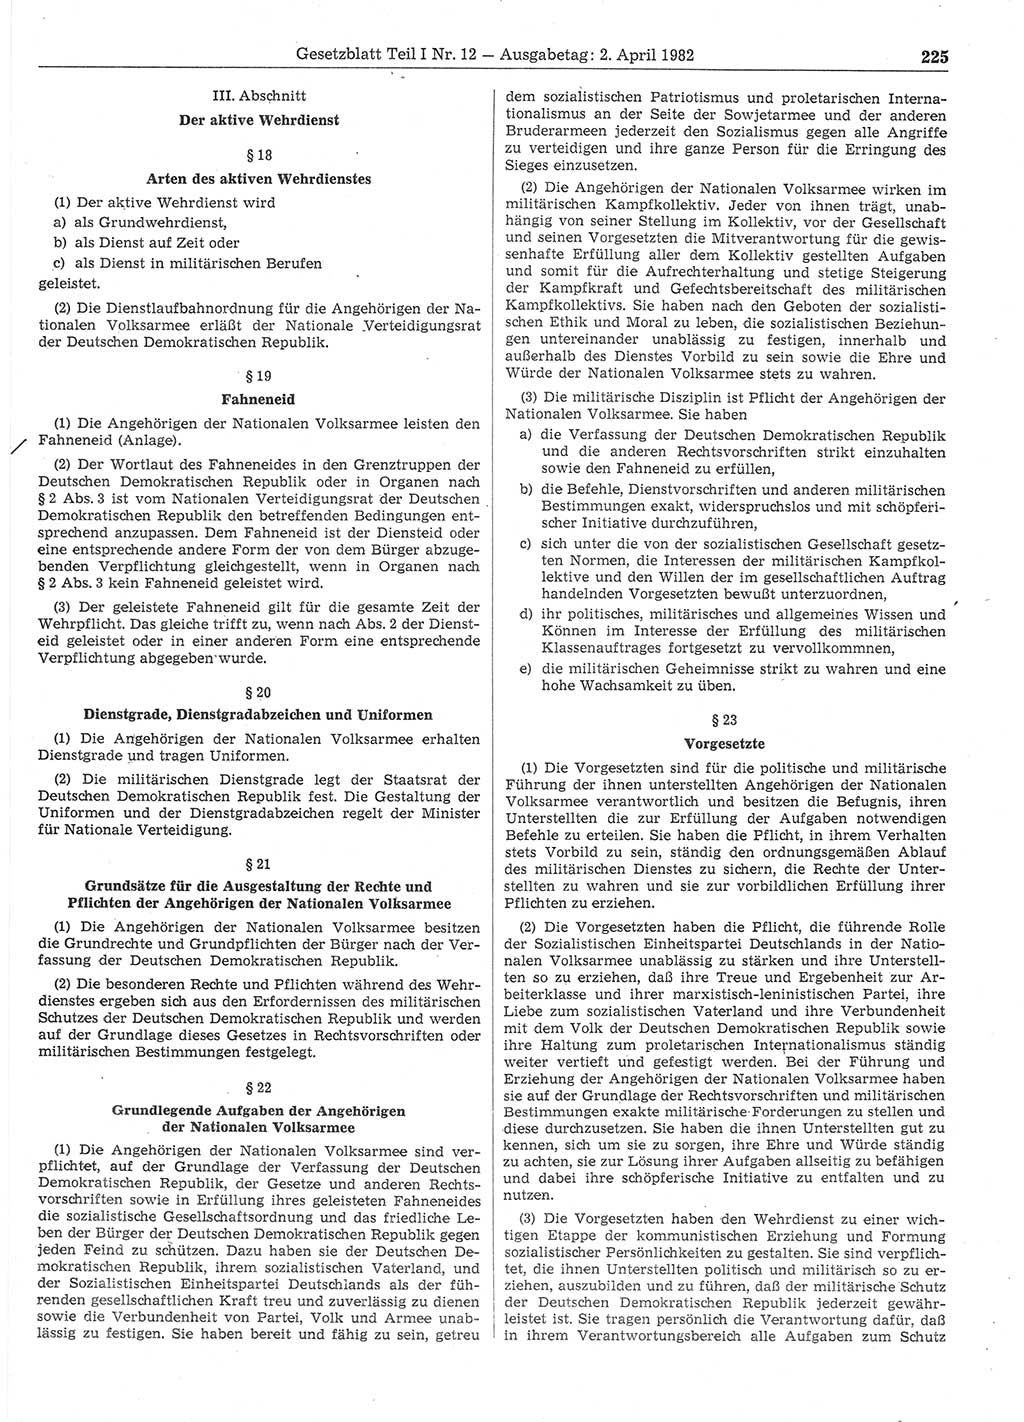 Gesetzblatt (GBl.) der Deutschen Demokratischen Republik (DDR) Teil Ⅰ 1982, Seite 225 (GBl. DDR Ⅰ 1982, S. 225)